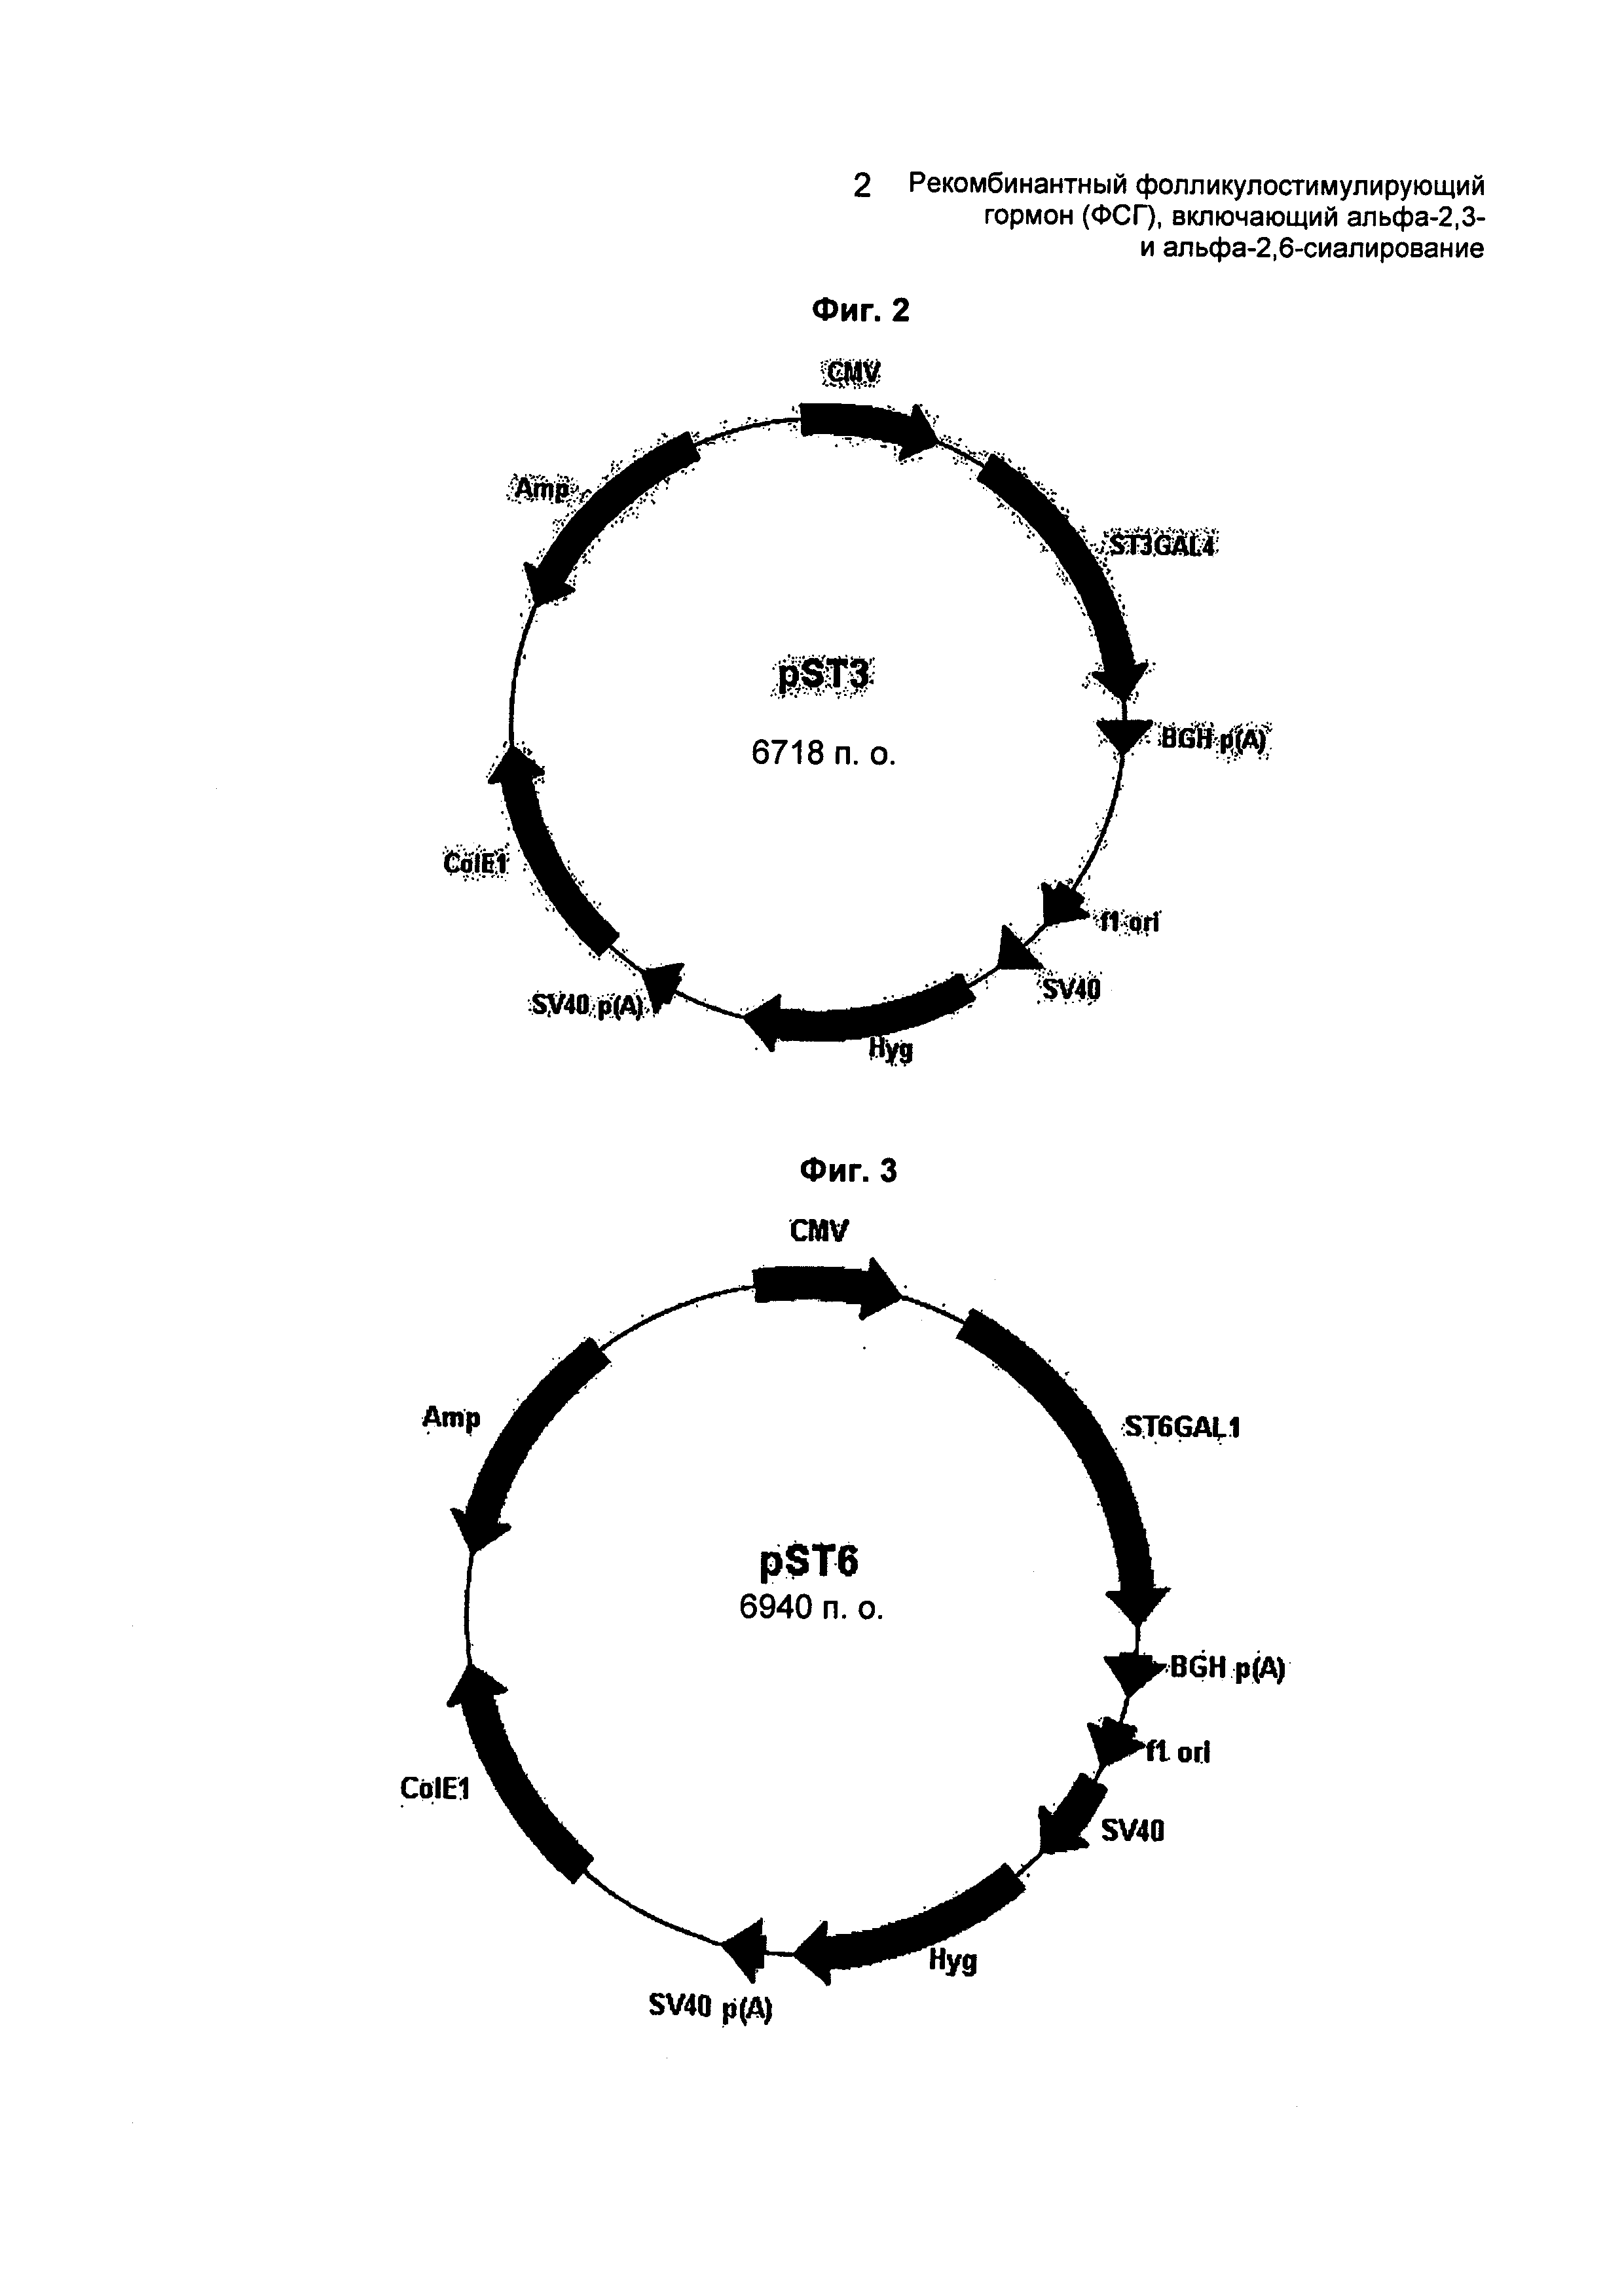 Рекомбинантный фолликулостимулирующий гормон (ФСГ), включающий альфа-2,3- и альфа-2,6-сиалирование